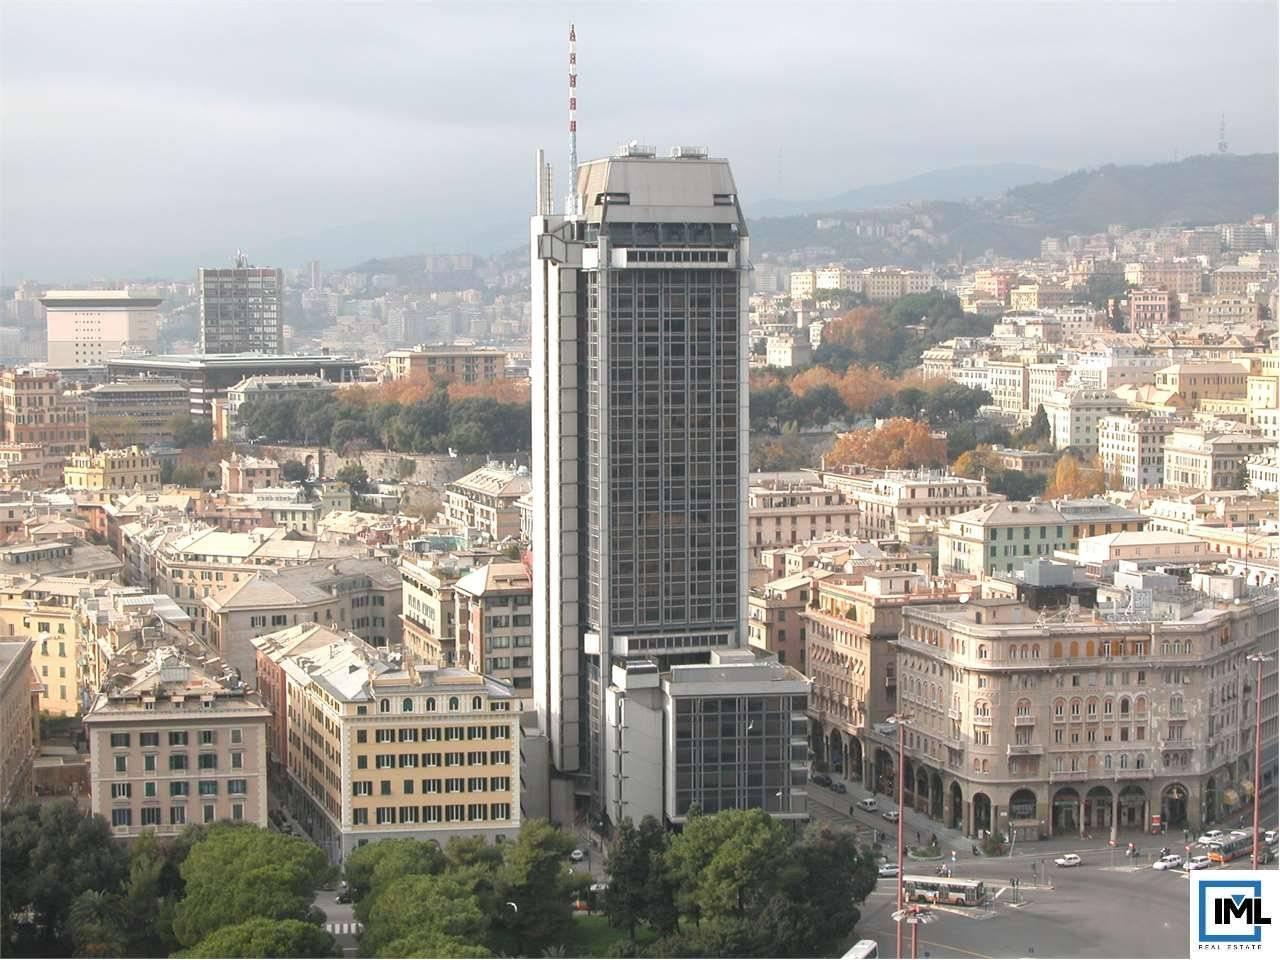 Ufficio condiviso in affitto a Genova